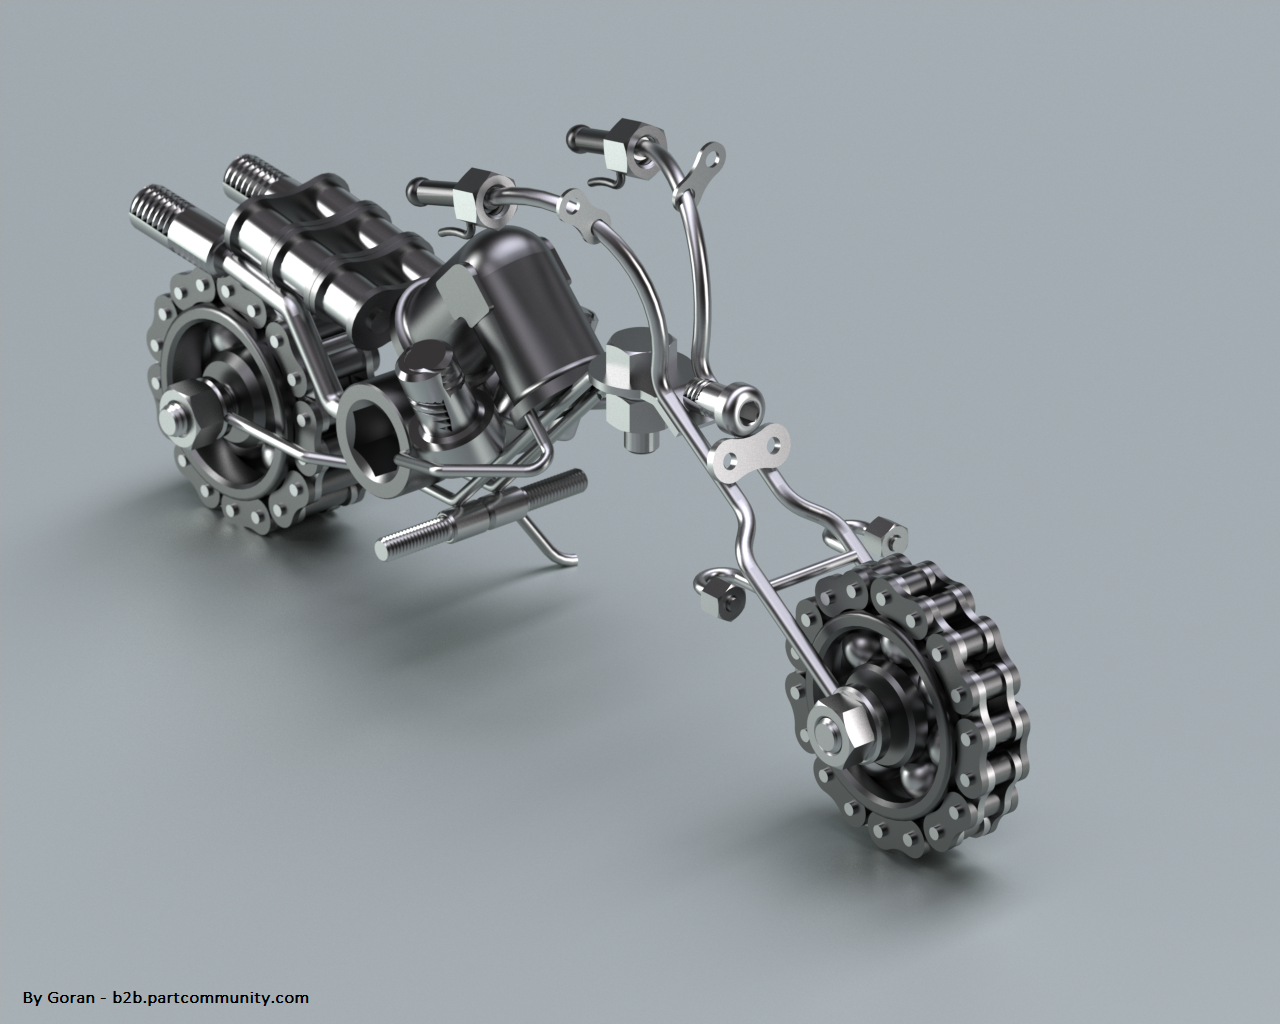 金属零件组装Chopper摩托车模型图纸